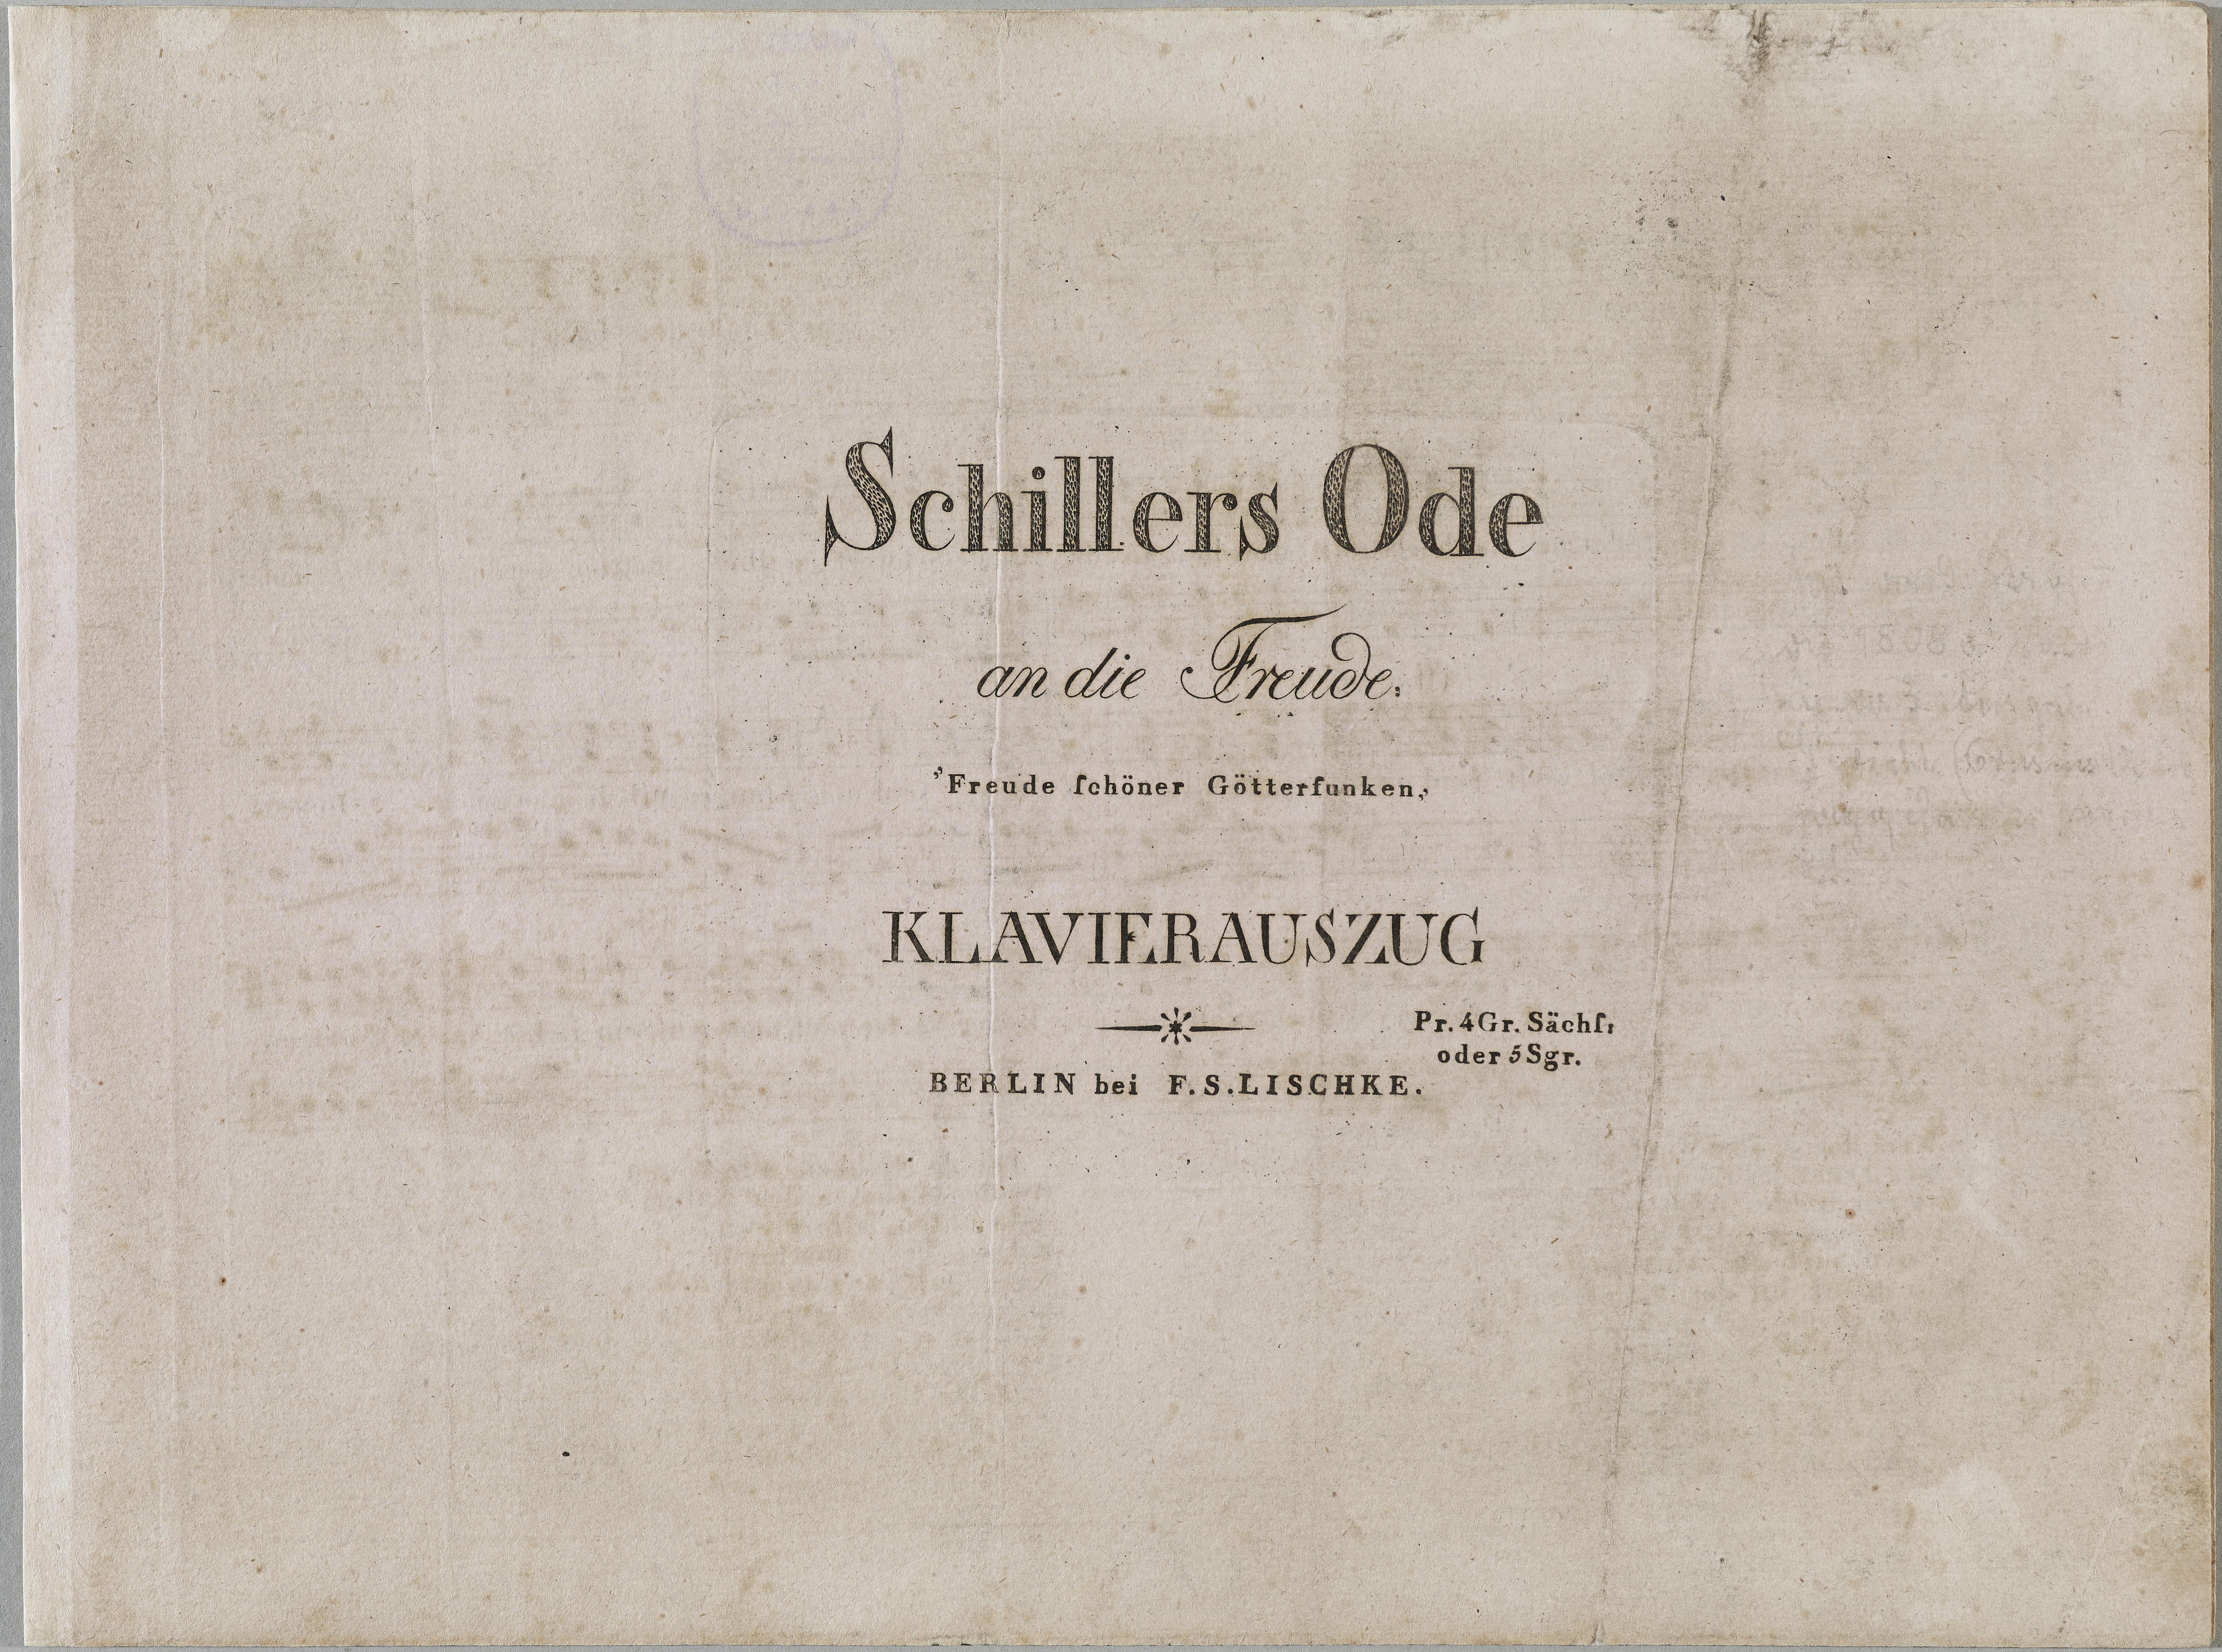 Klavierauszug des Liedes "Ode an die Freude" von Friedrich Schiller in der Vertonung von Ludwig van Beethoven, um 1823